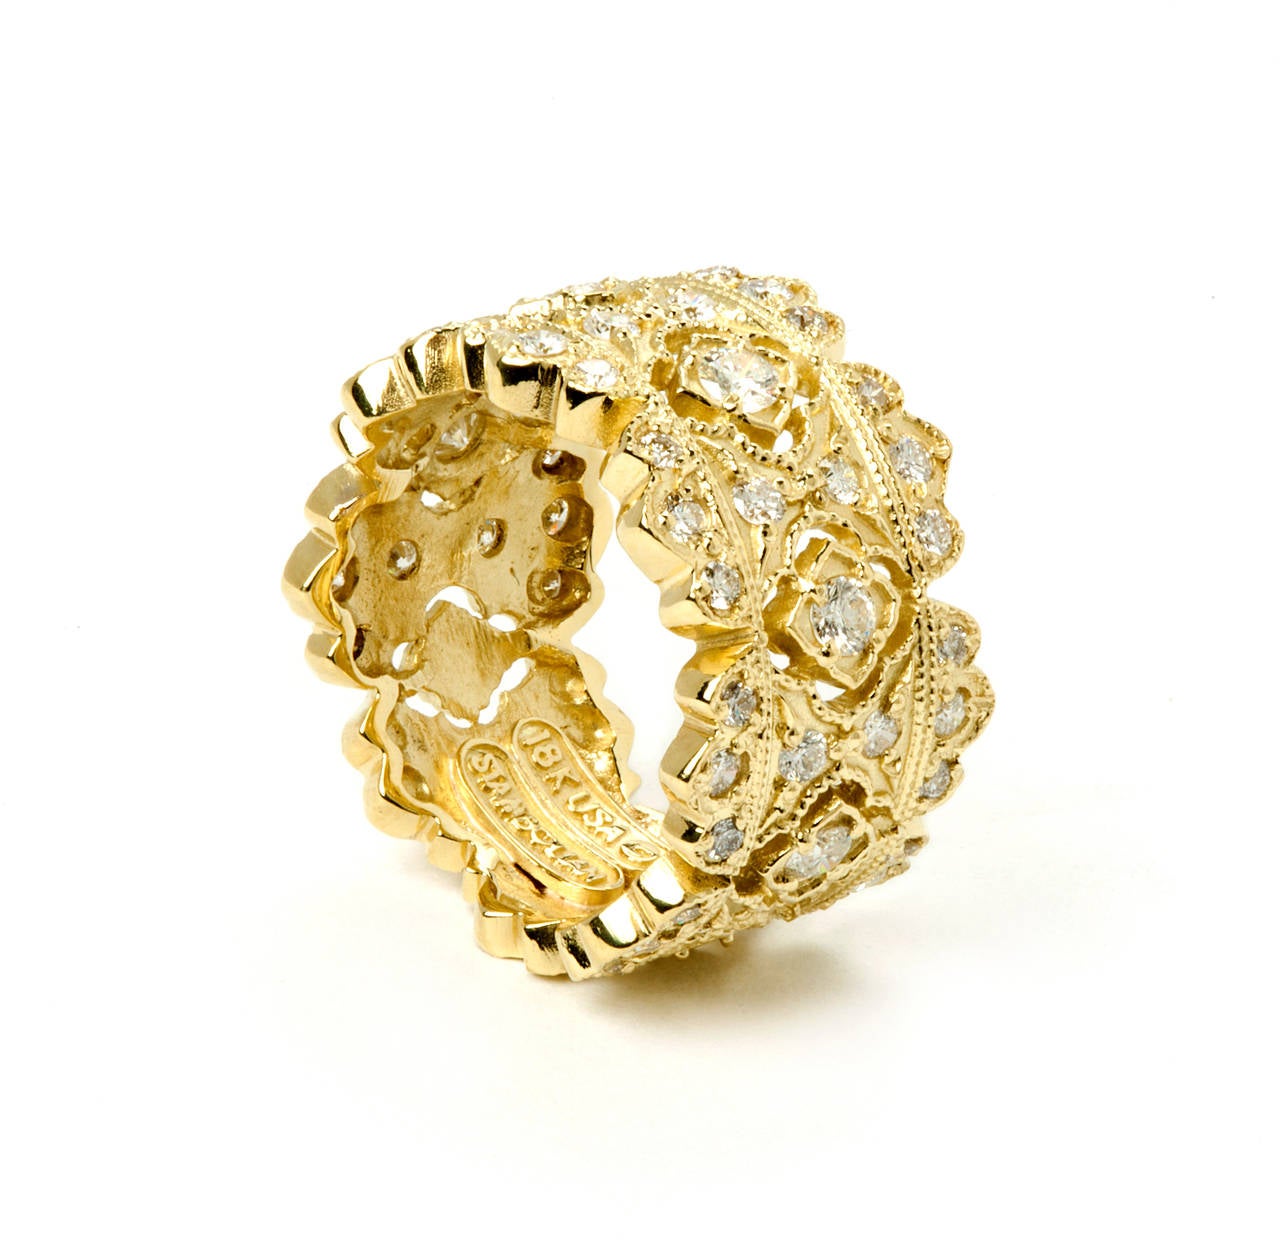 Stambolian: 18 Karat Gelbgold Diamant-Ring mit breitem Band, Passion Collection

Dies ist der Bandring aus der 